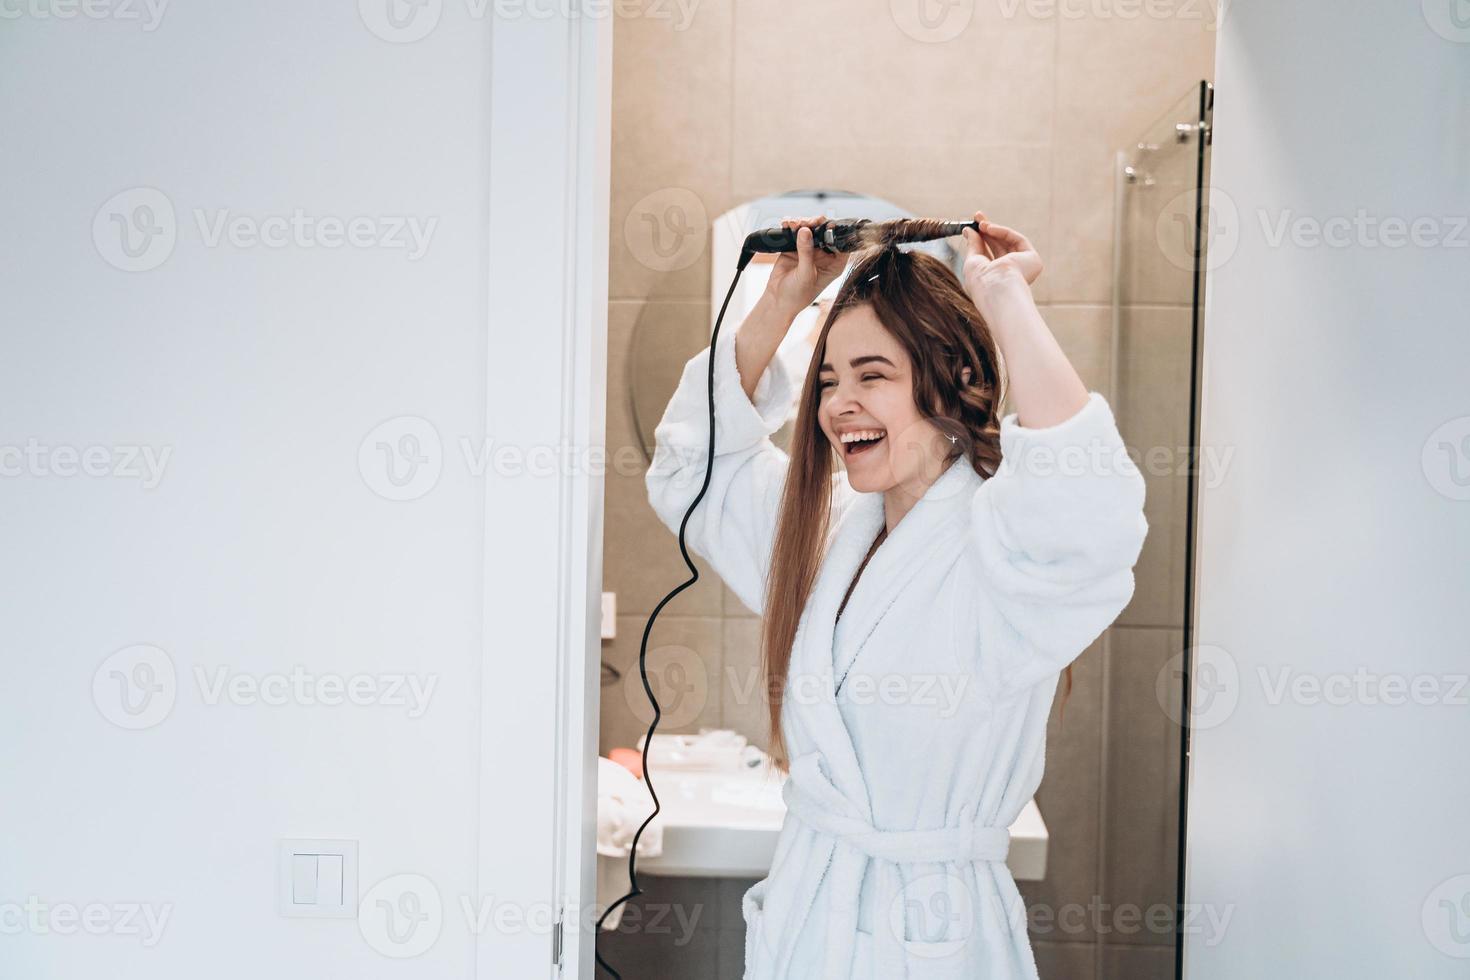 bella mujer sonriente rizando el cabello largo con rizador. foto